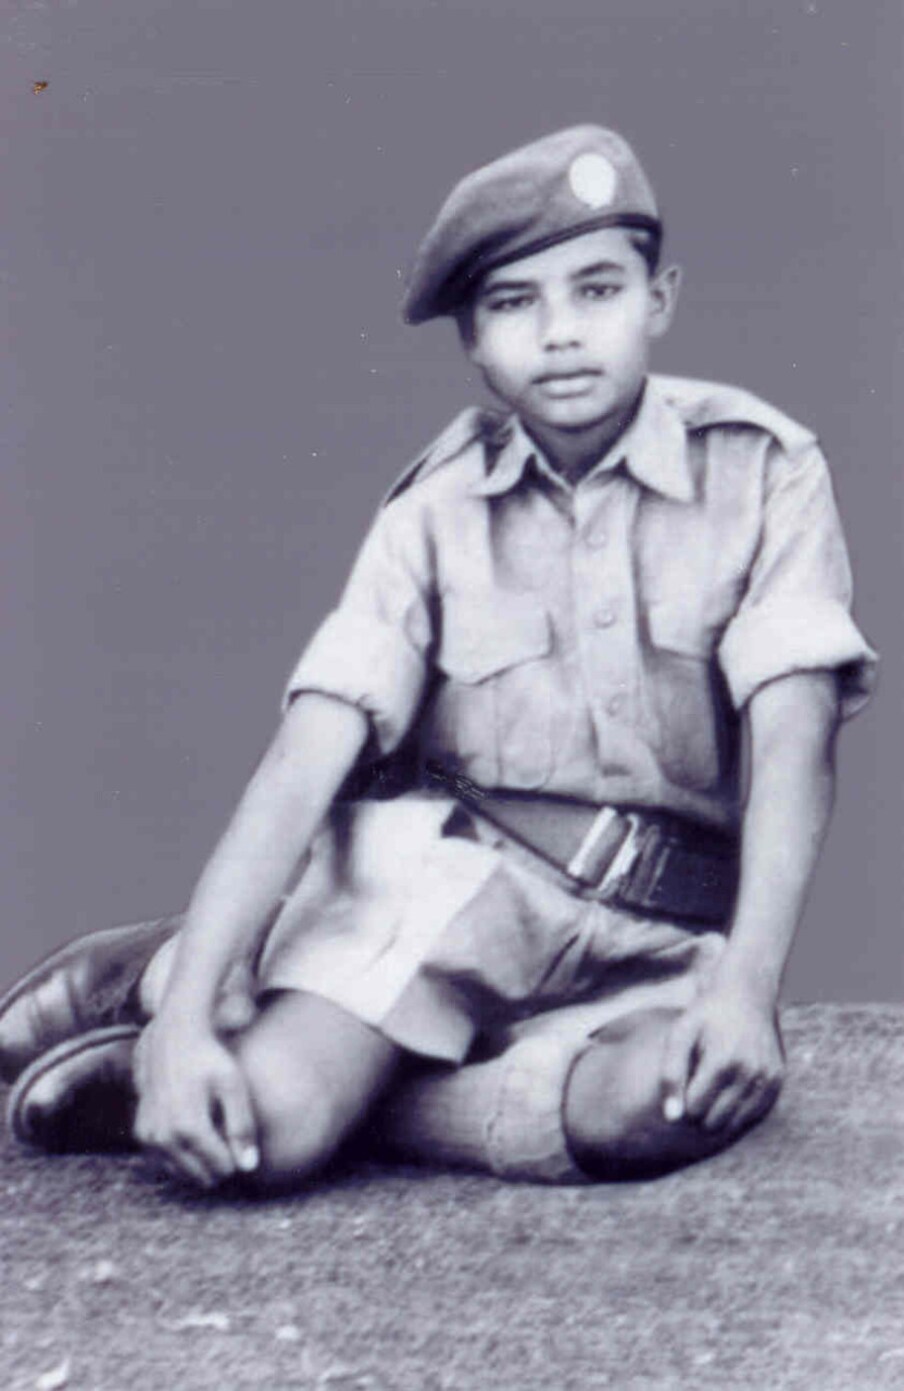  17 సెప్టెంబర్ 1950లోొ అప్పటి బాంబే స్టేట్‌లోని ఇప్పటి గుజరాత్‌లోని వాద్ నగర్‌లో జన్మించిన నరేంద్ర మోదీ